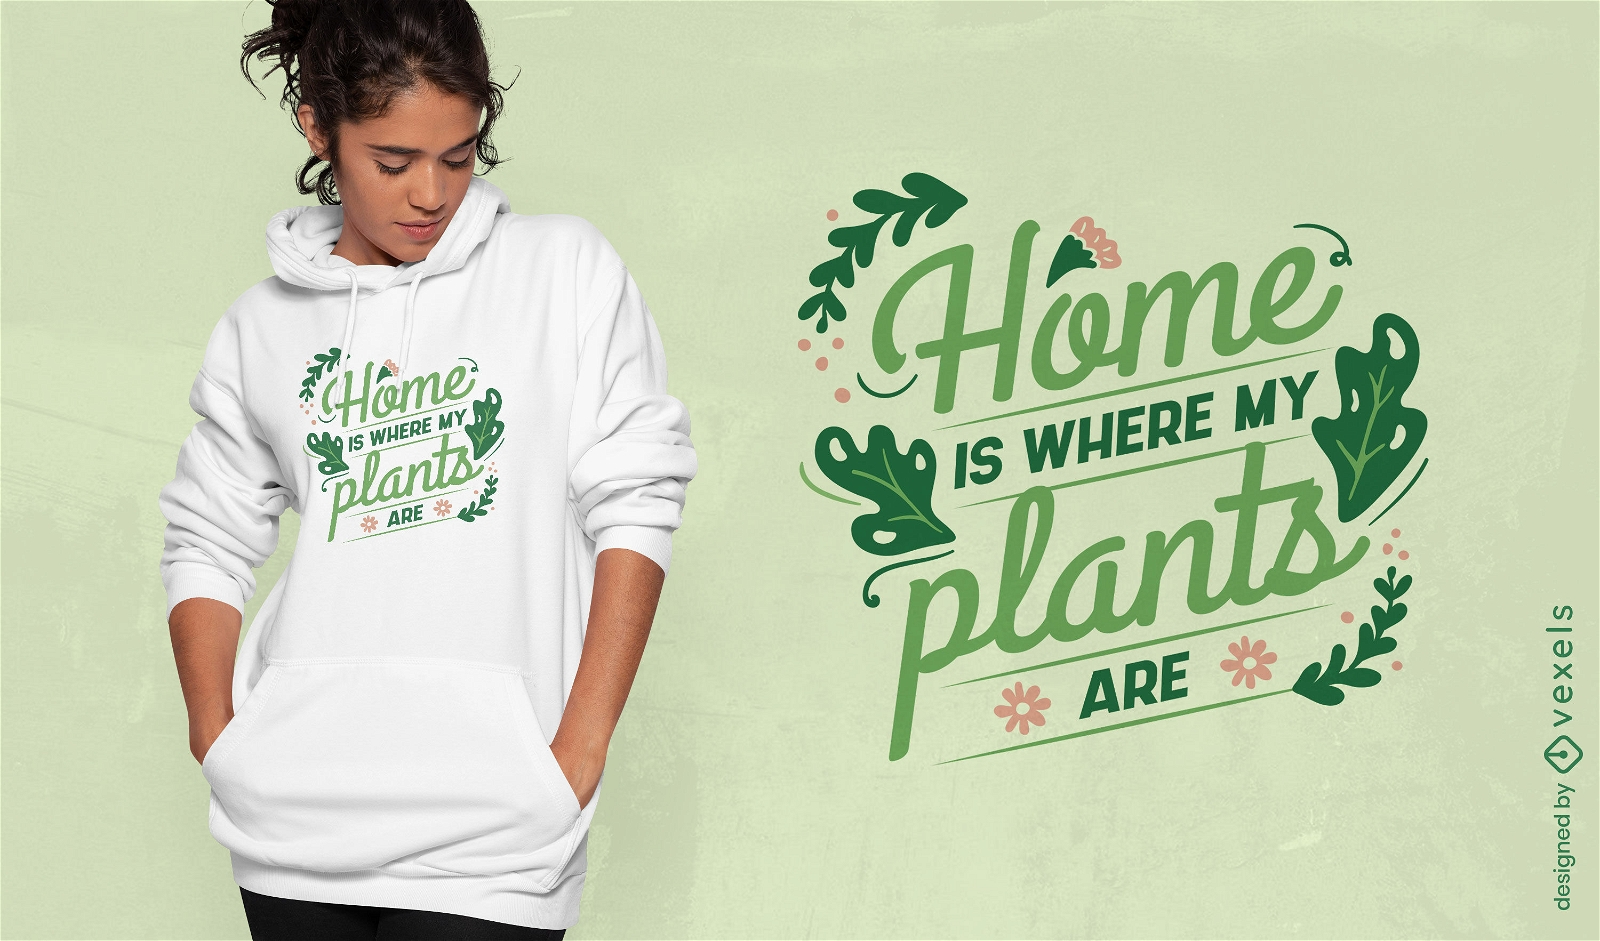 Garden plants home t-shirt design